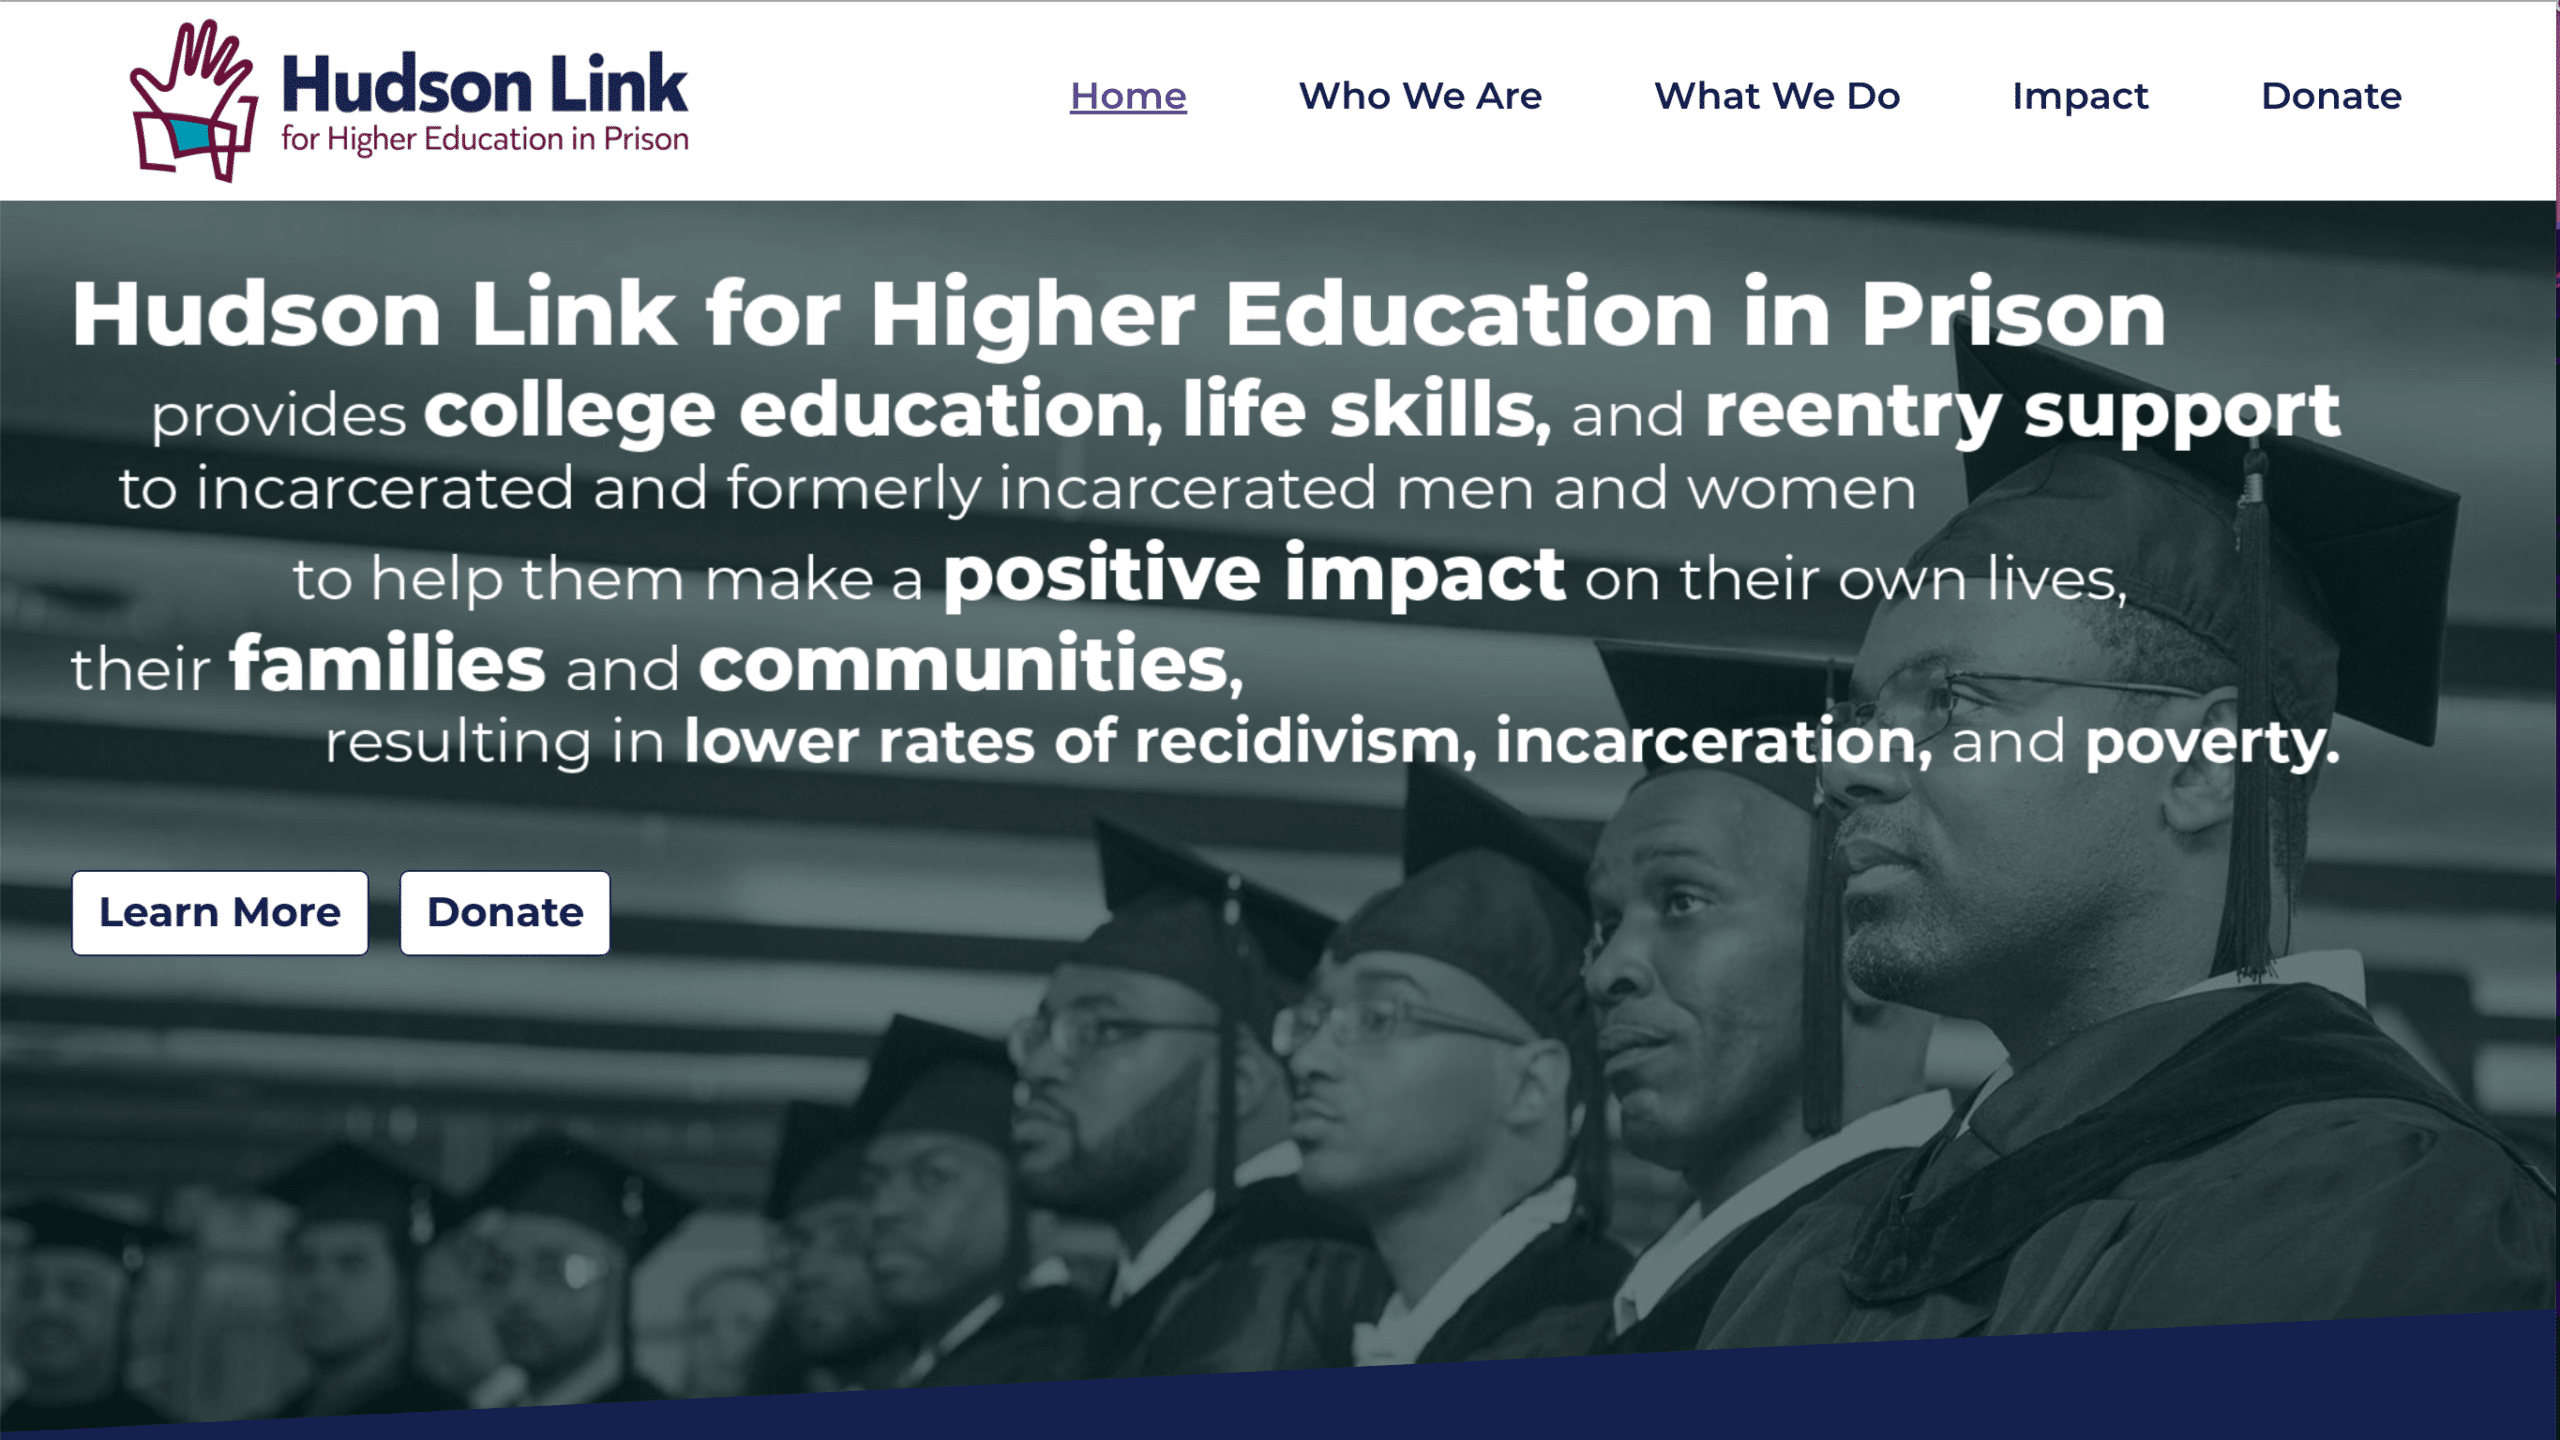 Hudson Link for Higher Education in Prison